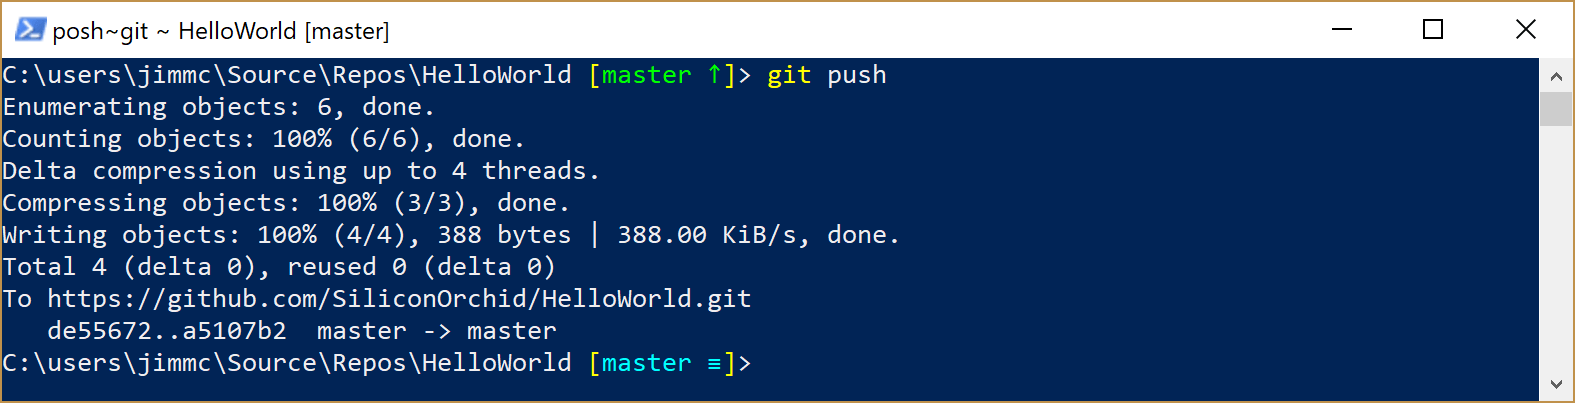 image showing Git push